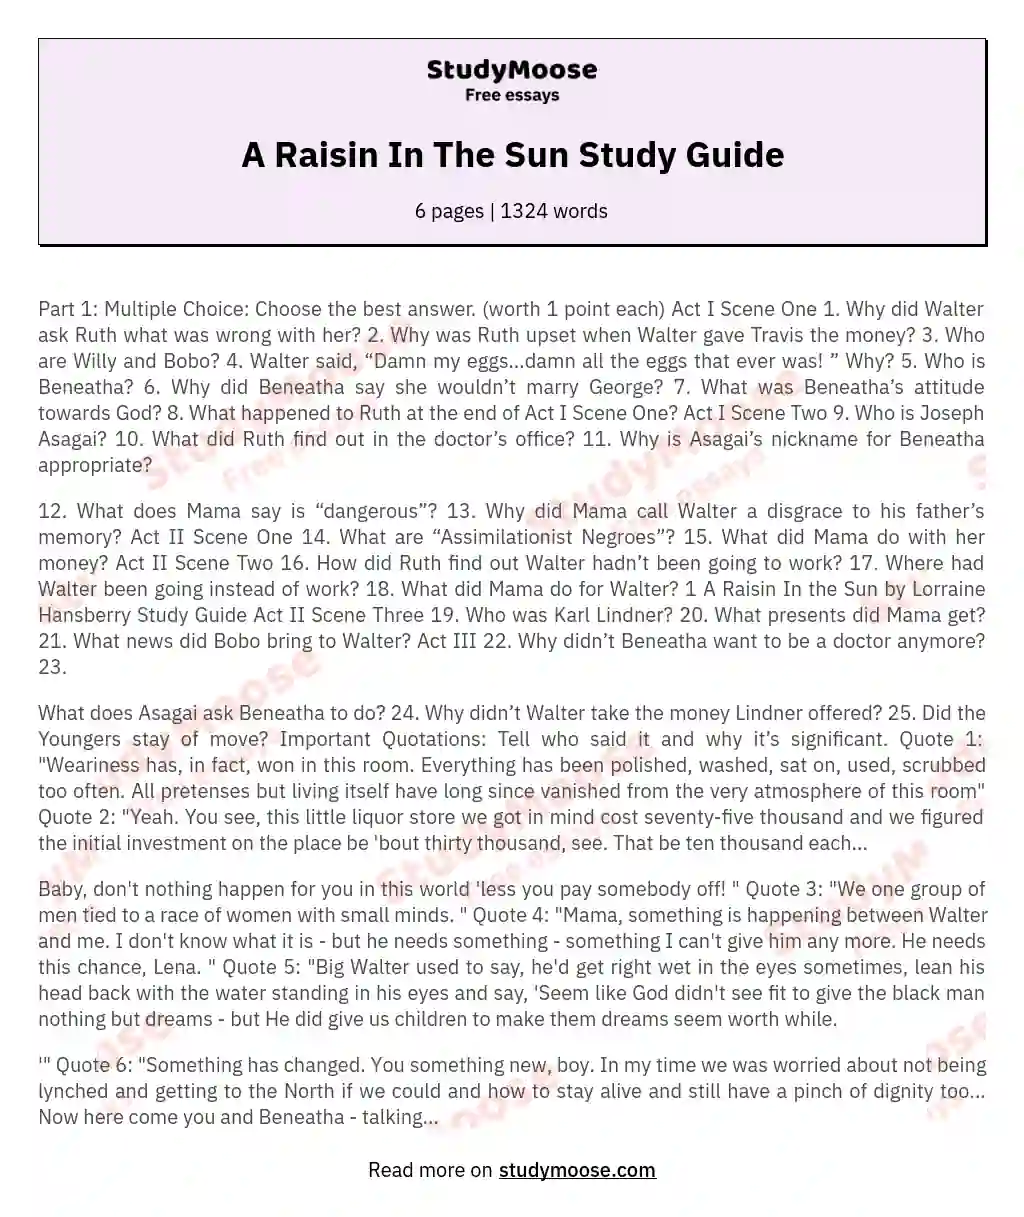 A Raisin In The Sun Study Guide essay